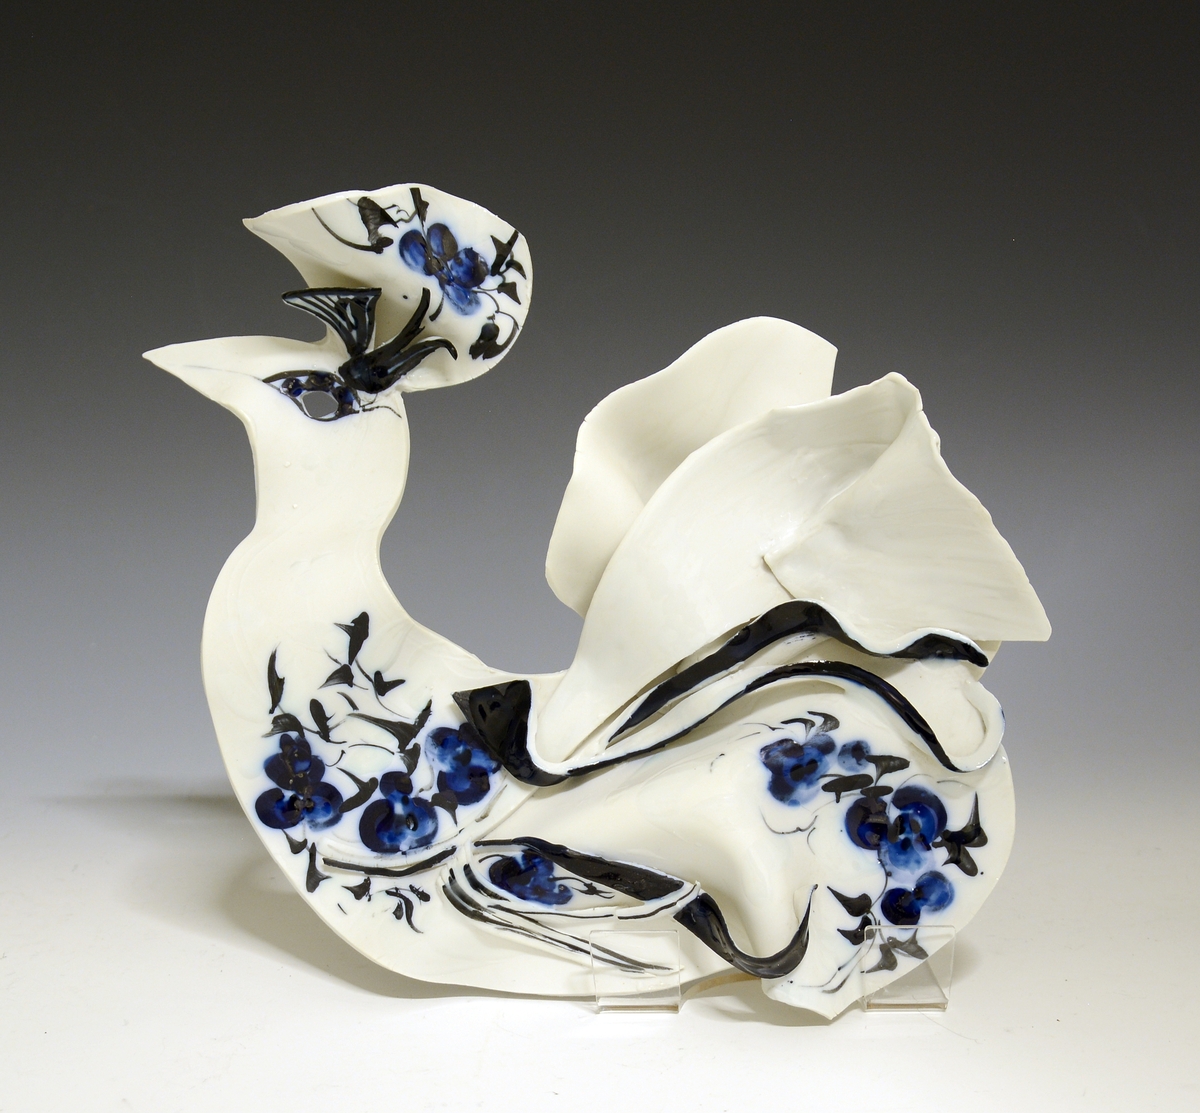 Figur i porselen. Ødefugle i hvitt med blå og sort dekor. Utført i tynne stykker av porselen.
Kunstner: Anne-Marie Ødegaard.